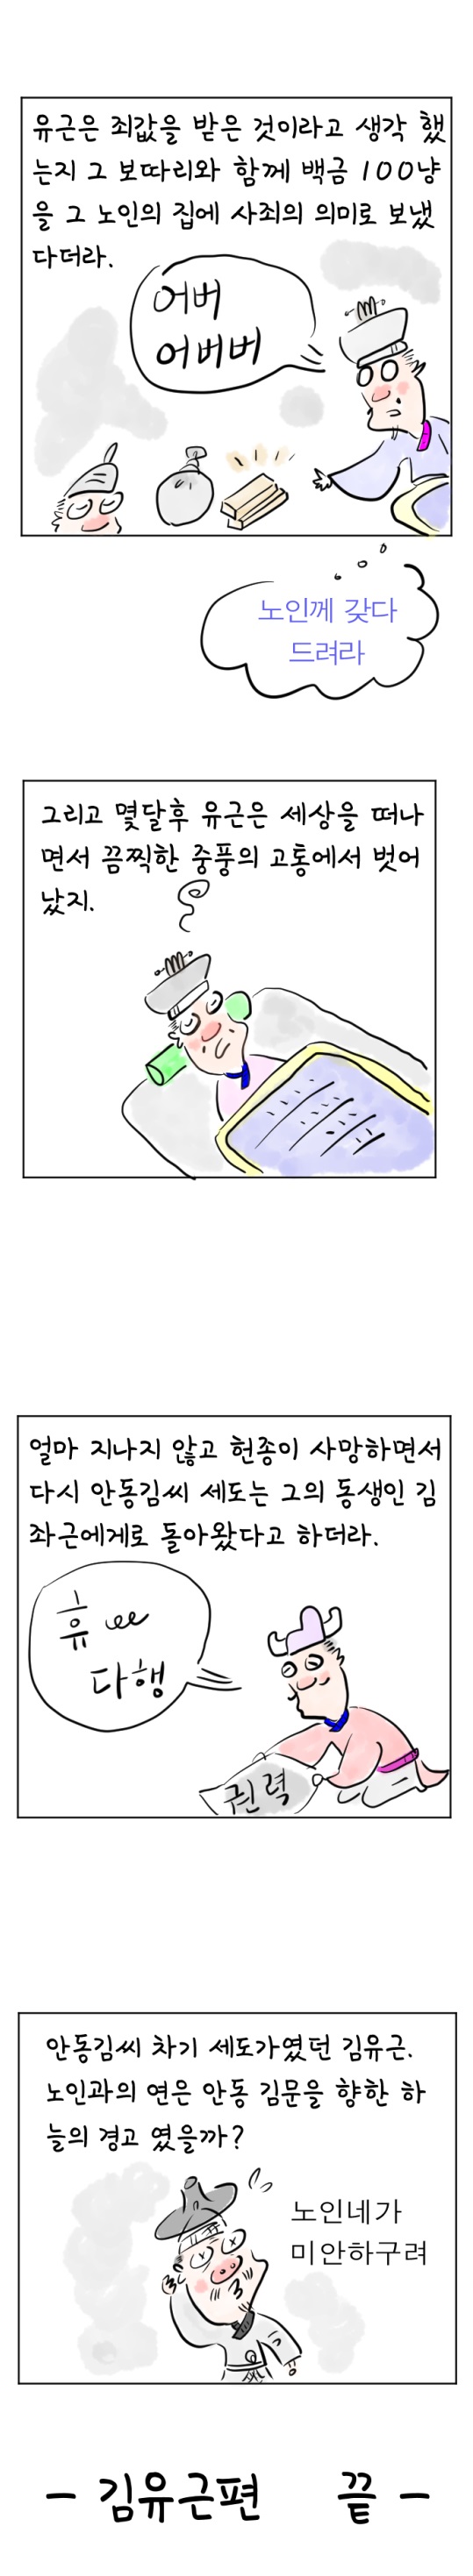 [역사툰] 史(사)람 이야기 22화: 안동김씨 세도가 김유근 이야기 

